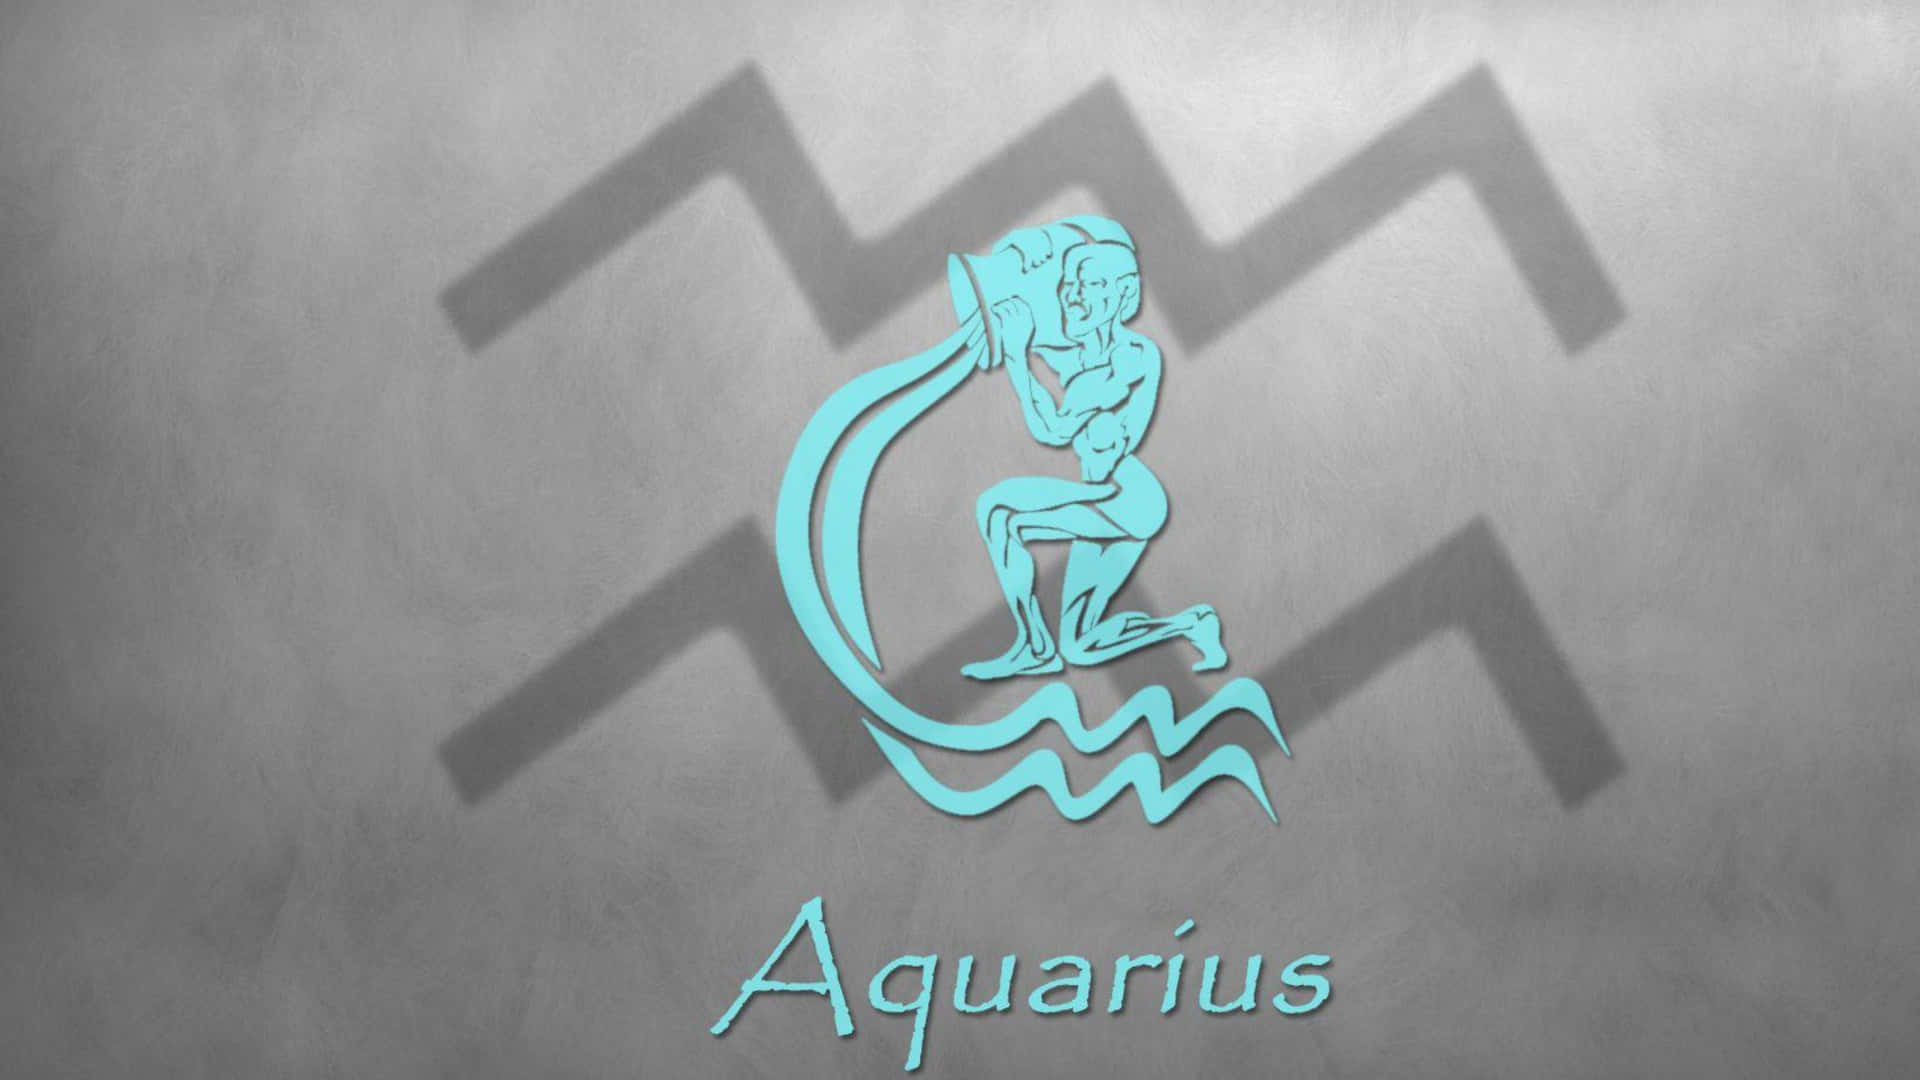 Download Aquarius Zodiac Sign Hd Wallpaper | Wallpapers.com